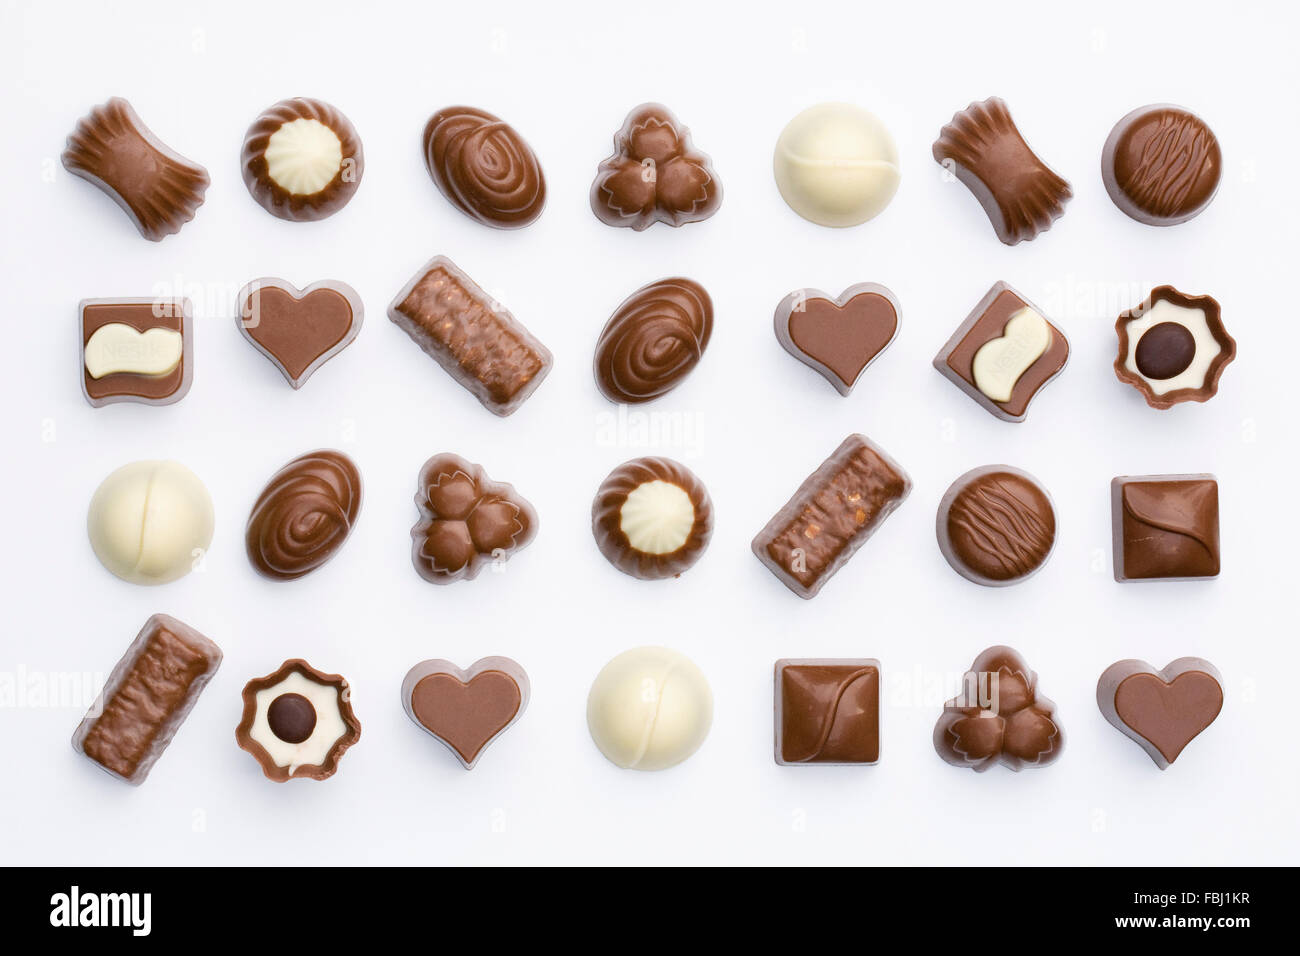 Dunkel, Milch und weißer Schokolade auf einem weißen Hintergrund. Stockfoto